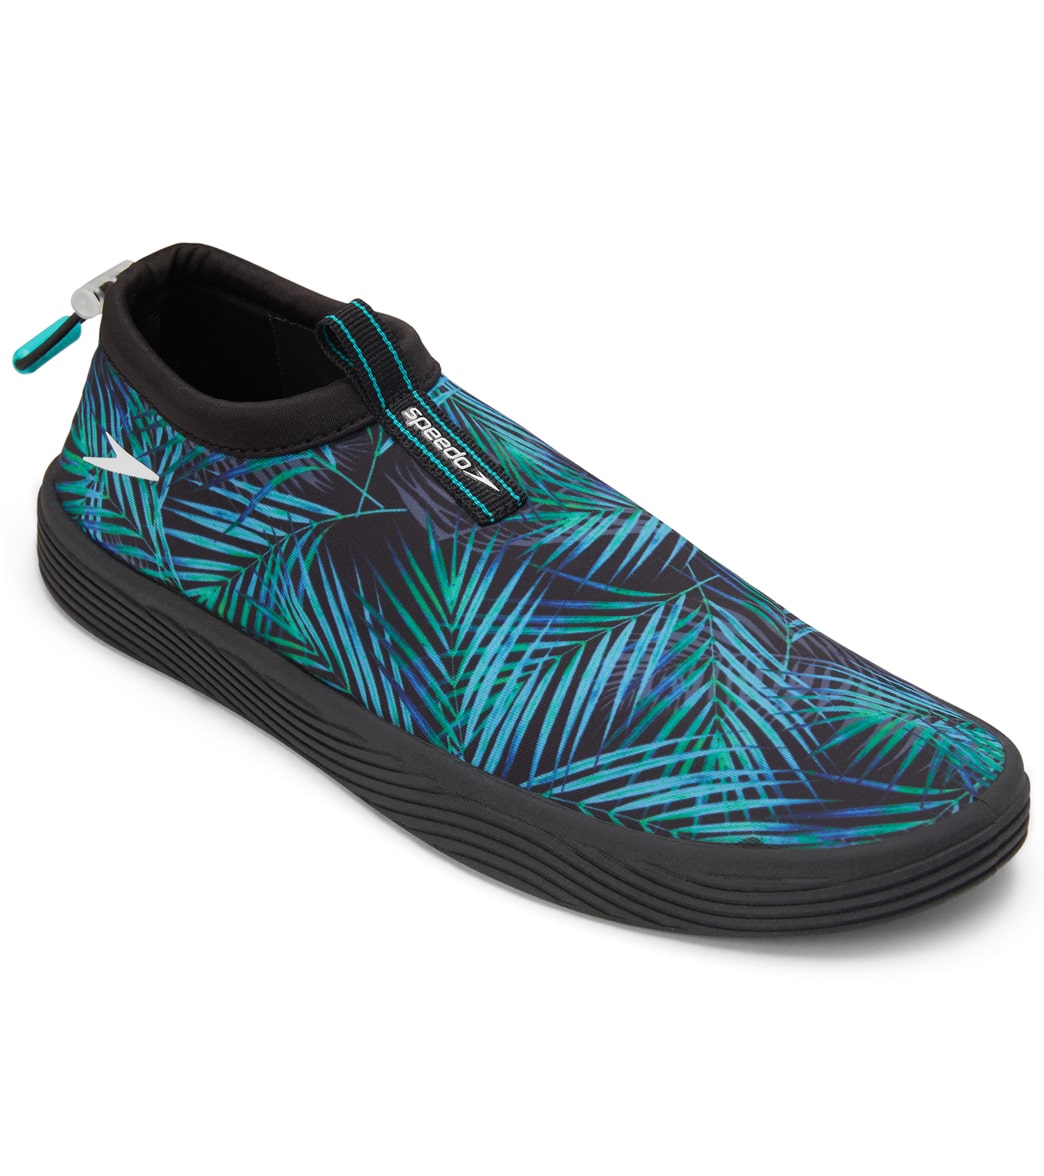 Speedo Men's Surfwalker Rush Water Shoe - Ceramic/Black 7 - Swimoutlet.com